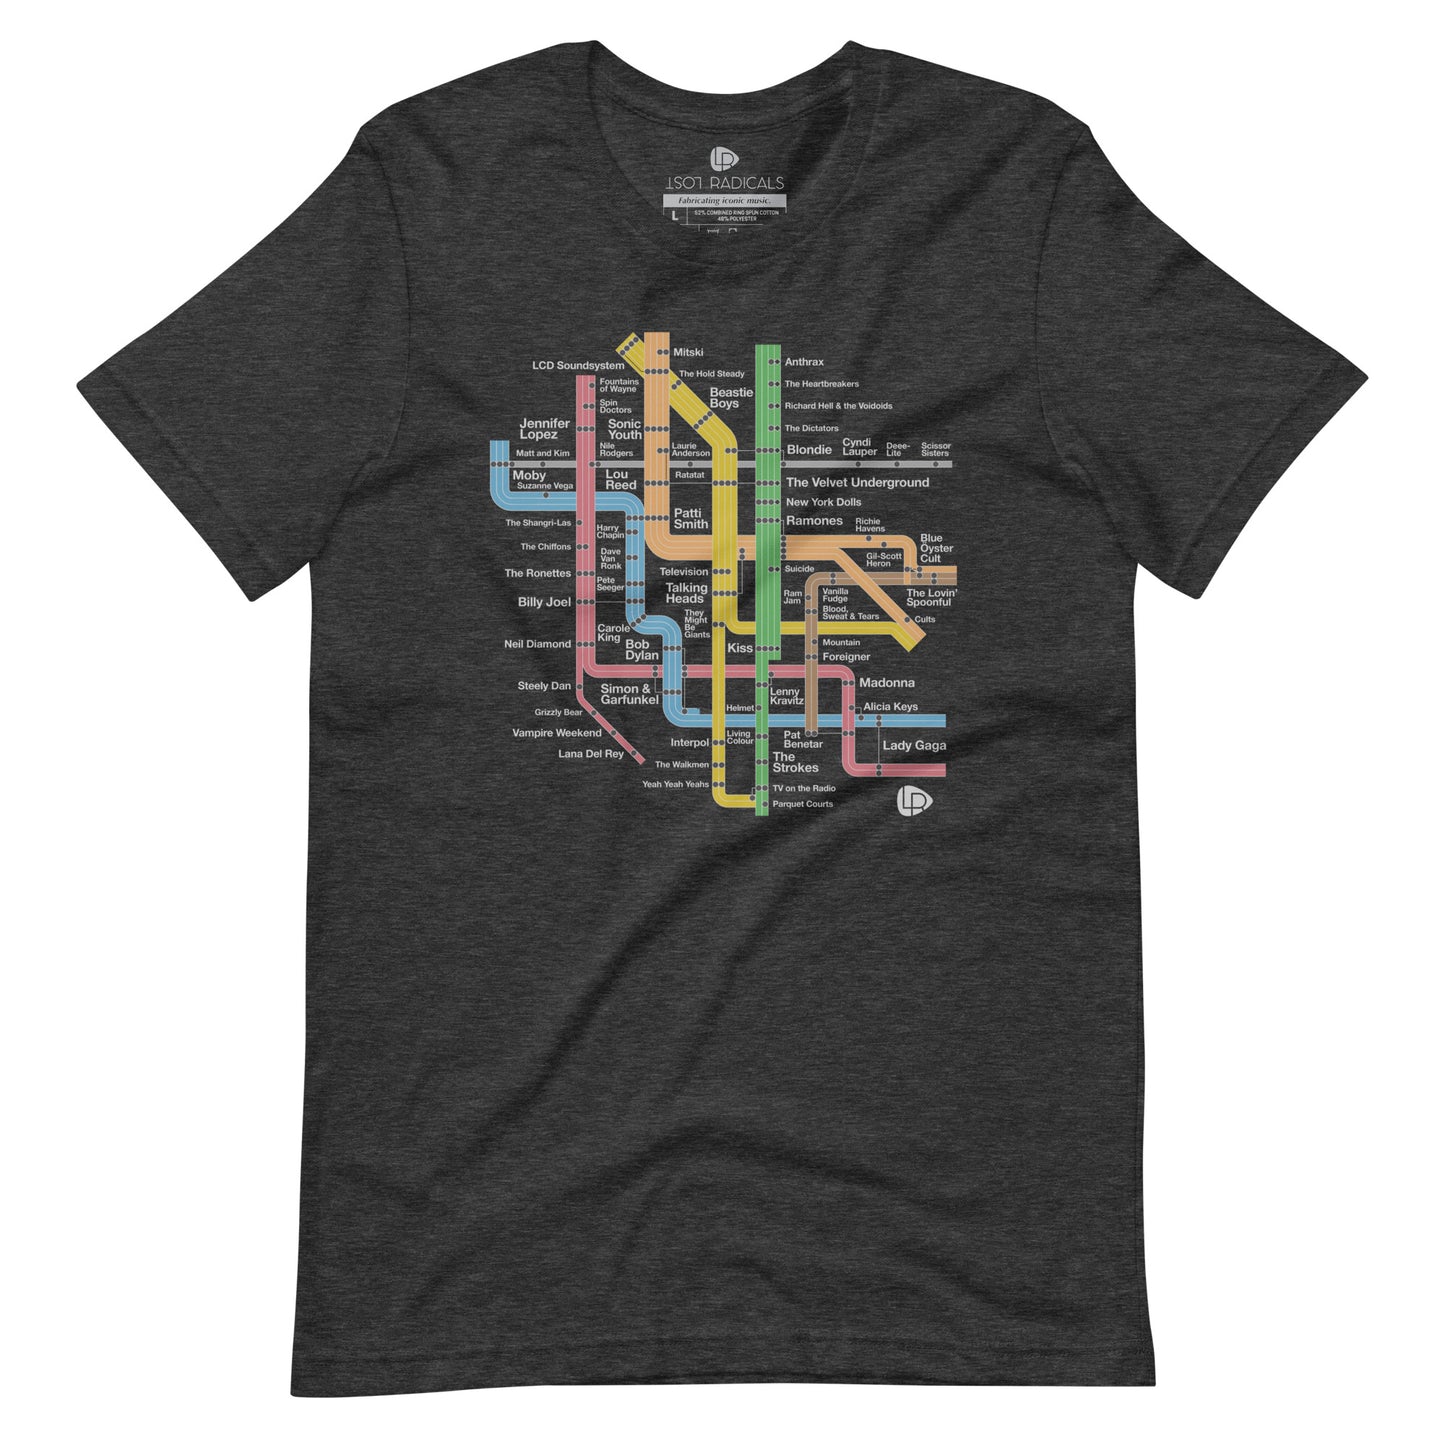 NYC Rock Underground T-Shirt - Lost Radicals